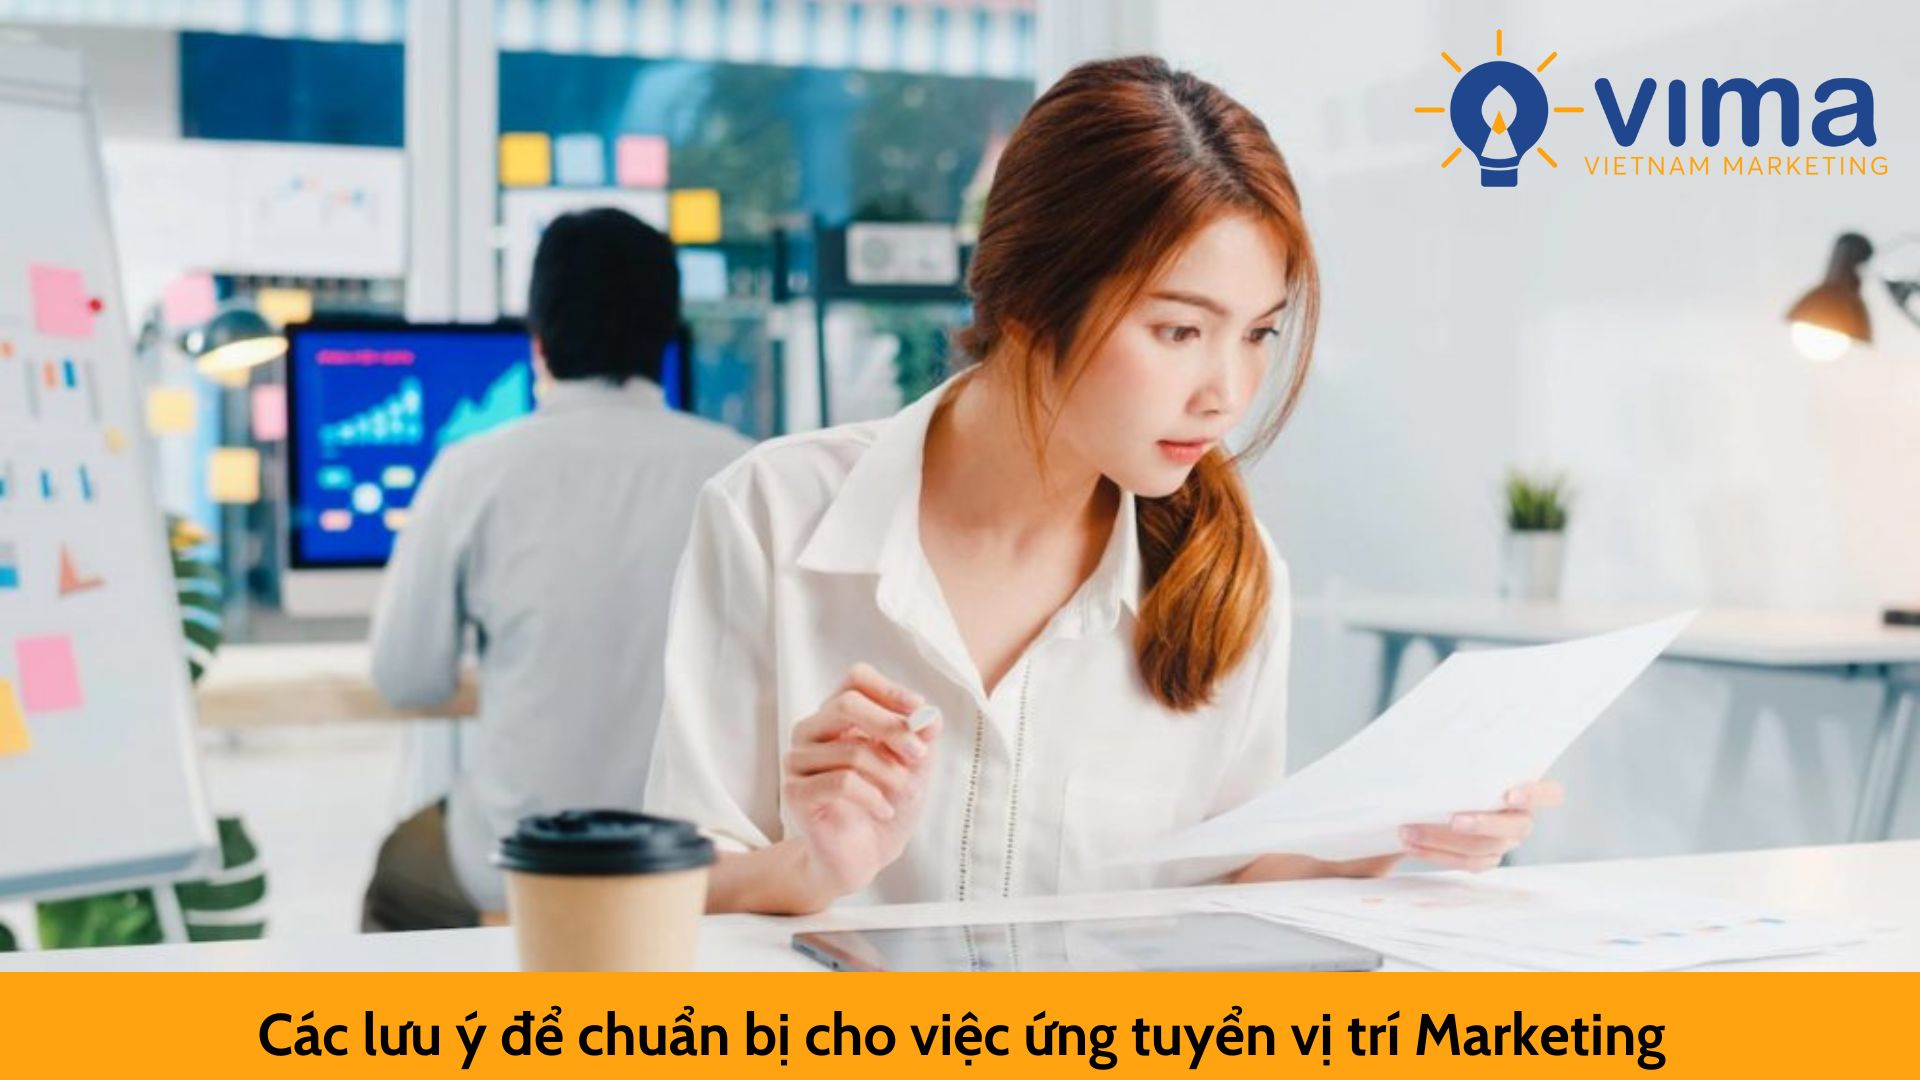 Các bước lưu ý cho vị trí việc làm Marketing tại Hà Nội